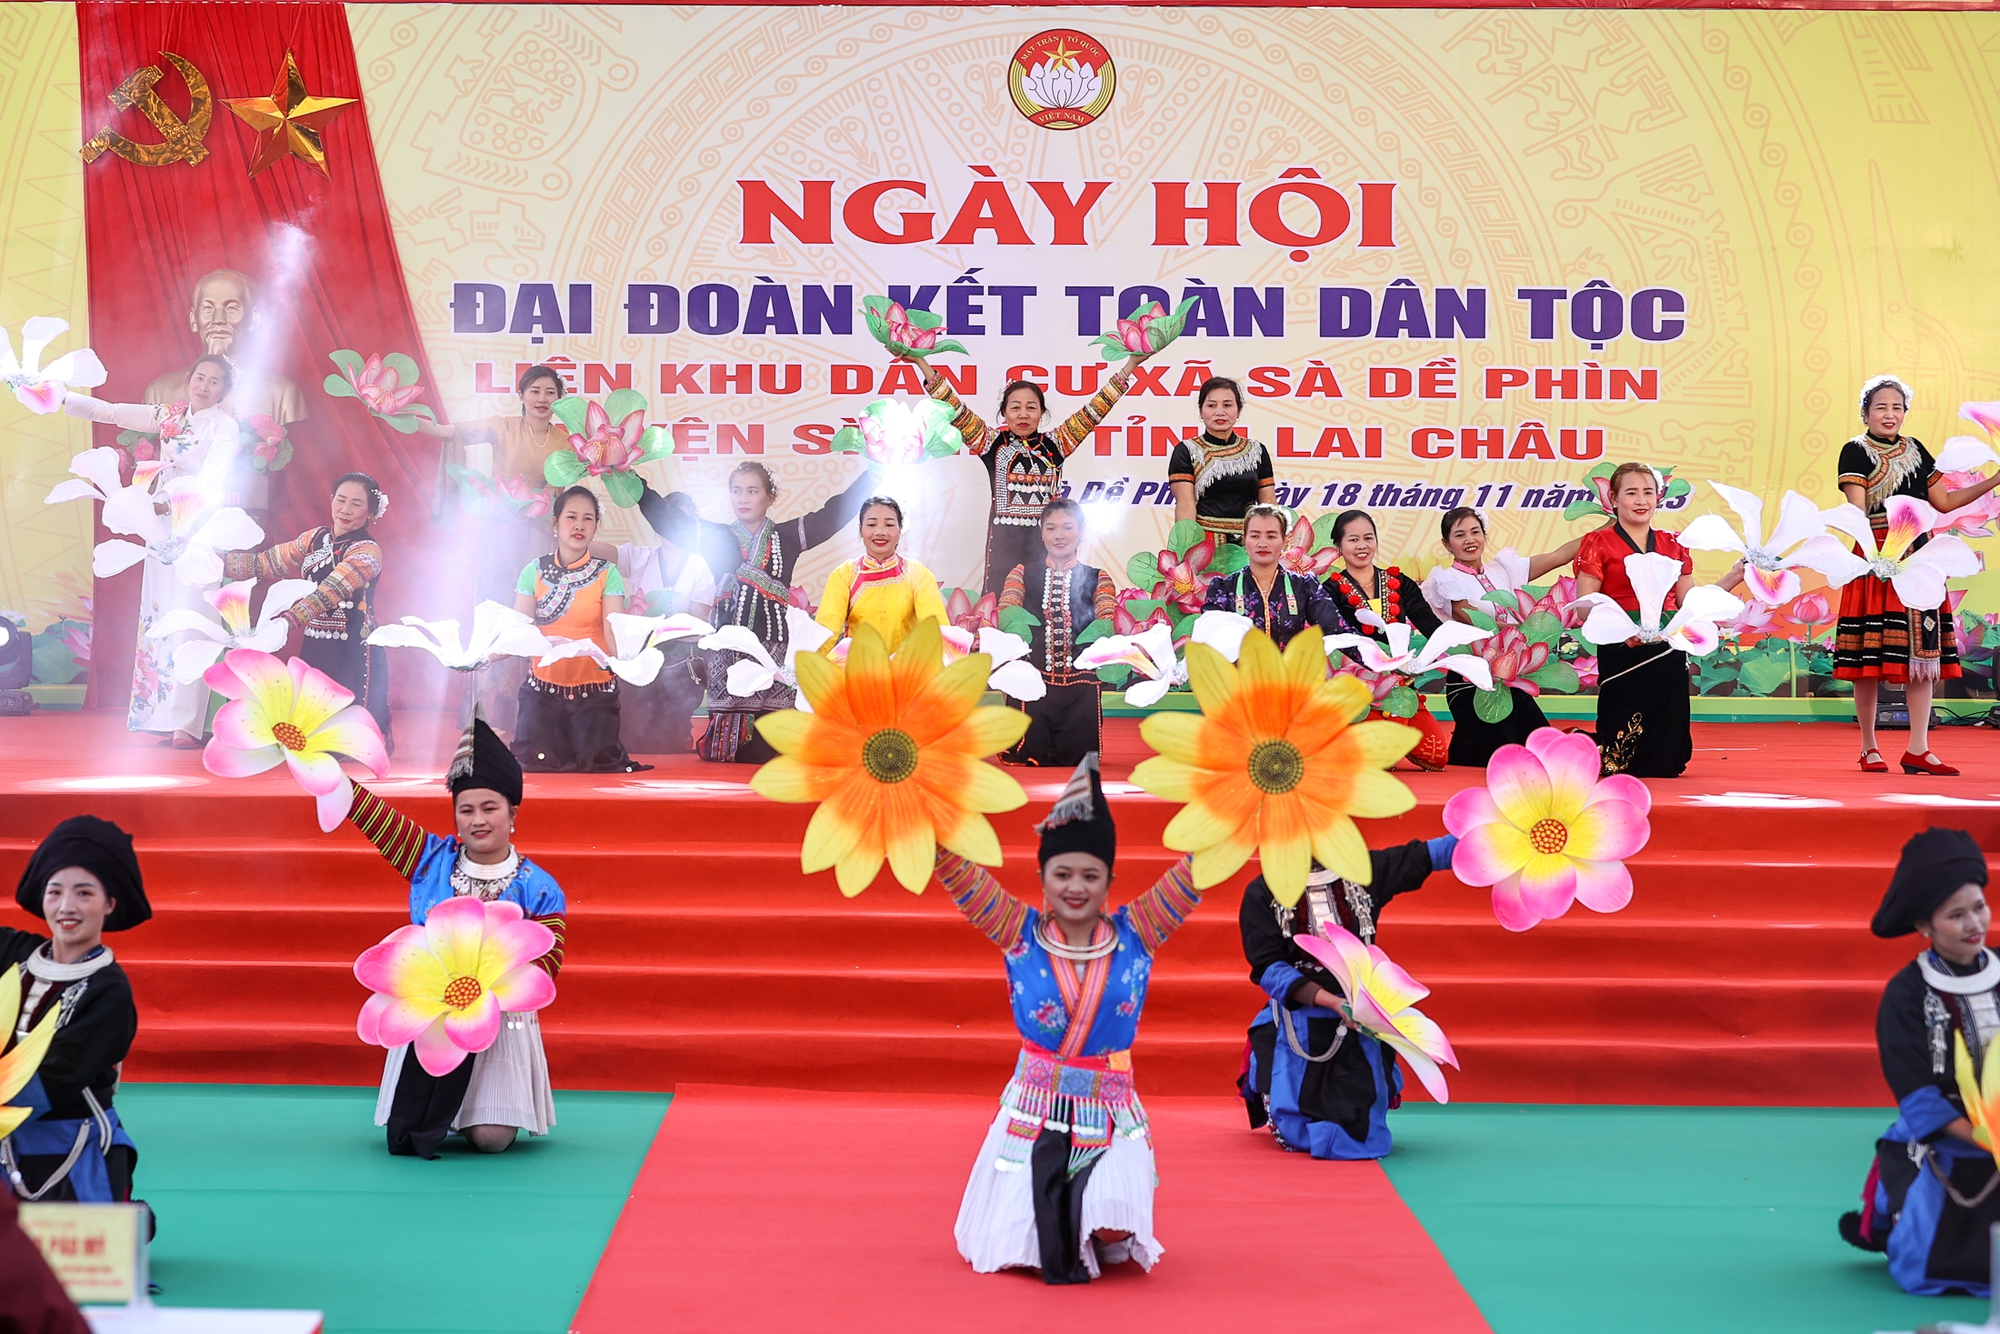 Thủ tướng chung vui Ngày hội đại đoàn kết cùng đồng bào các dân tộc tỉnh Lai Châu- Ảnh 10.